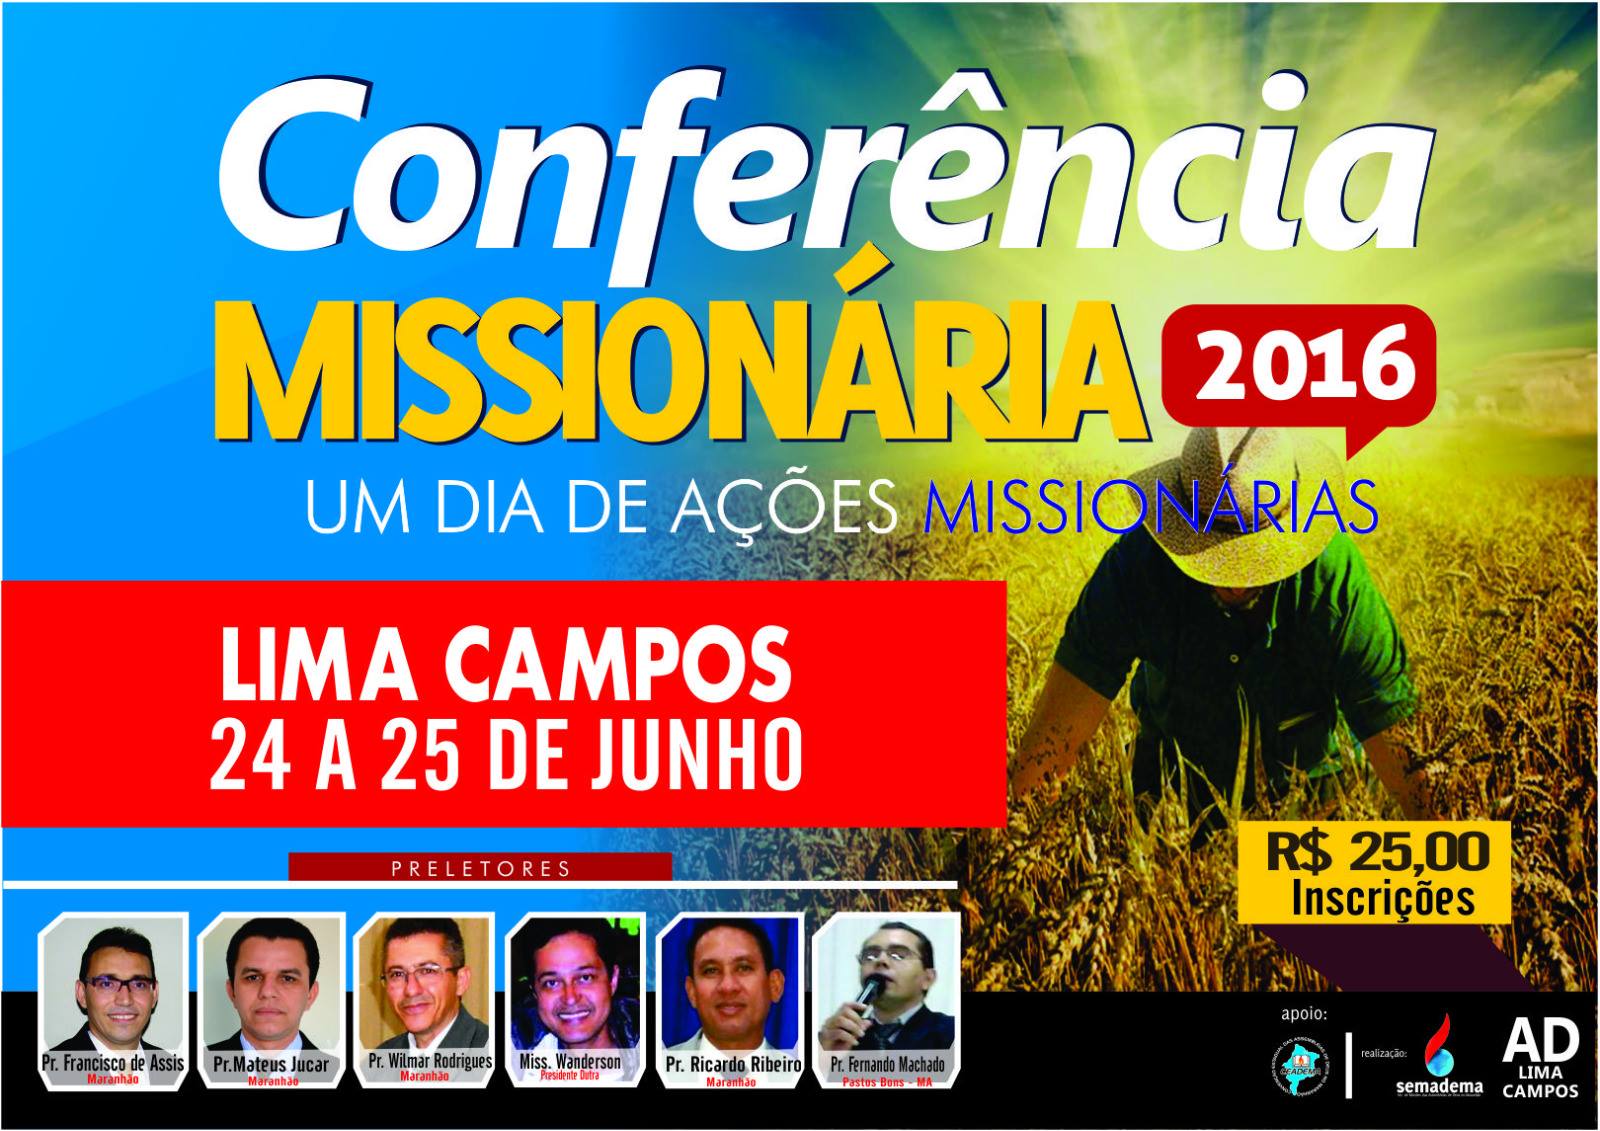 Conferencias Missionária Lima Campos